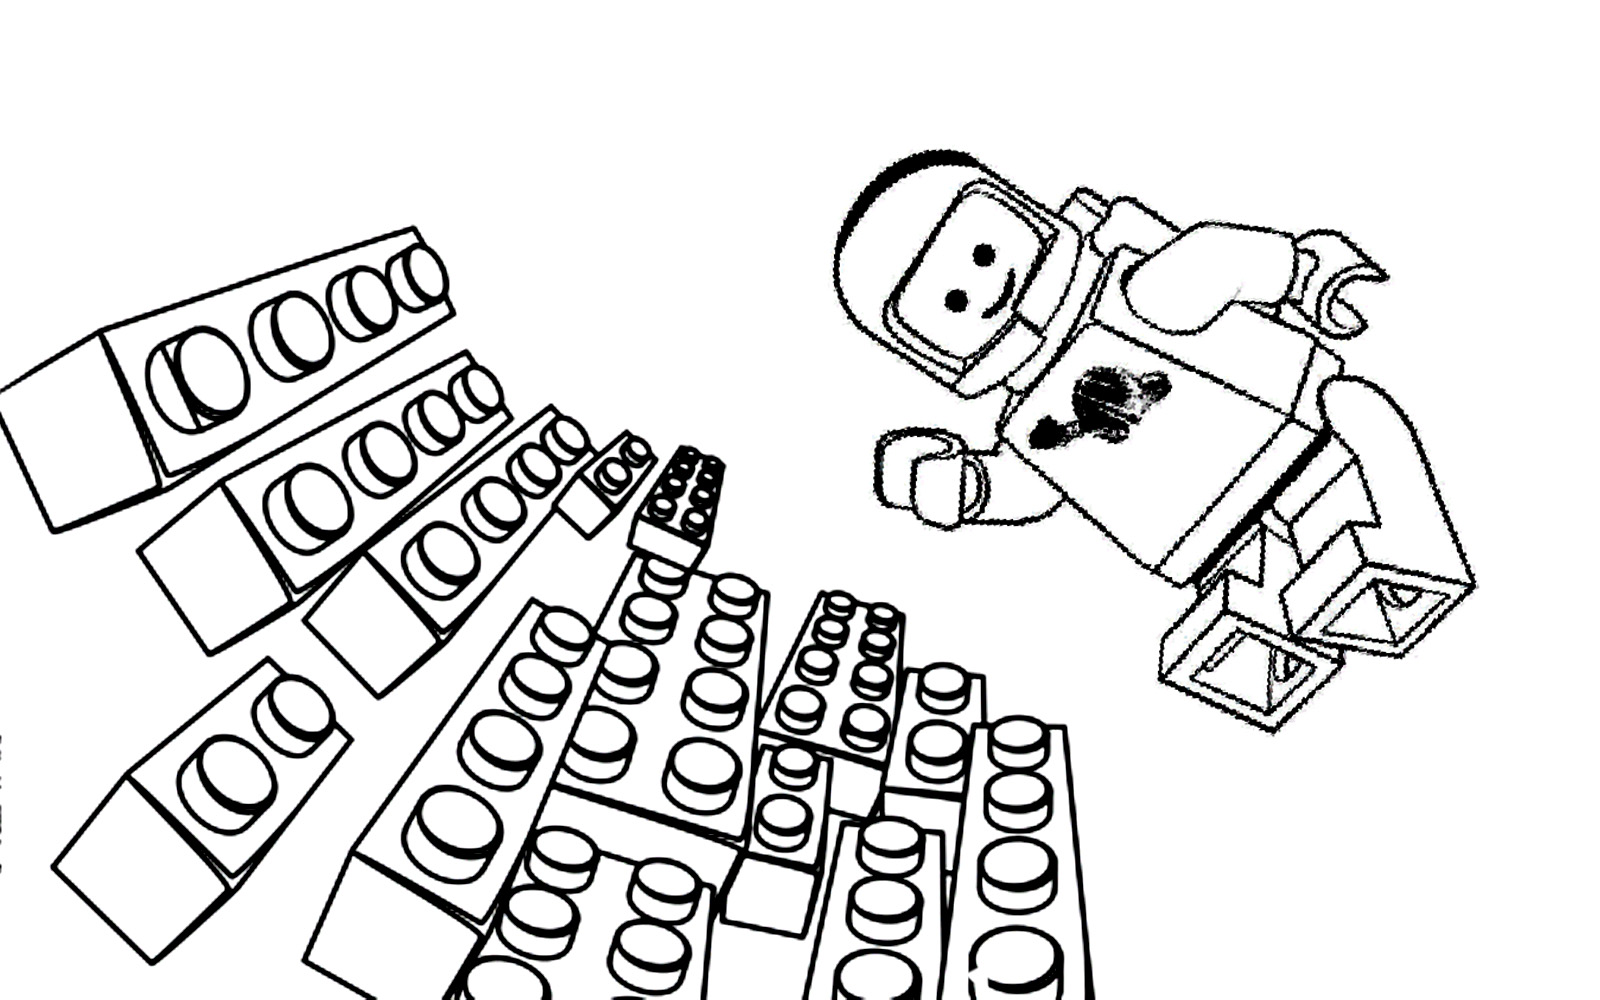 Benny o astronauta voa sobre os tijolos de Lego em gravidade zero!